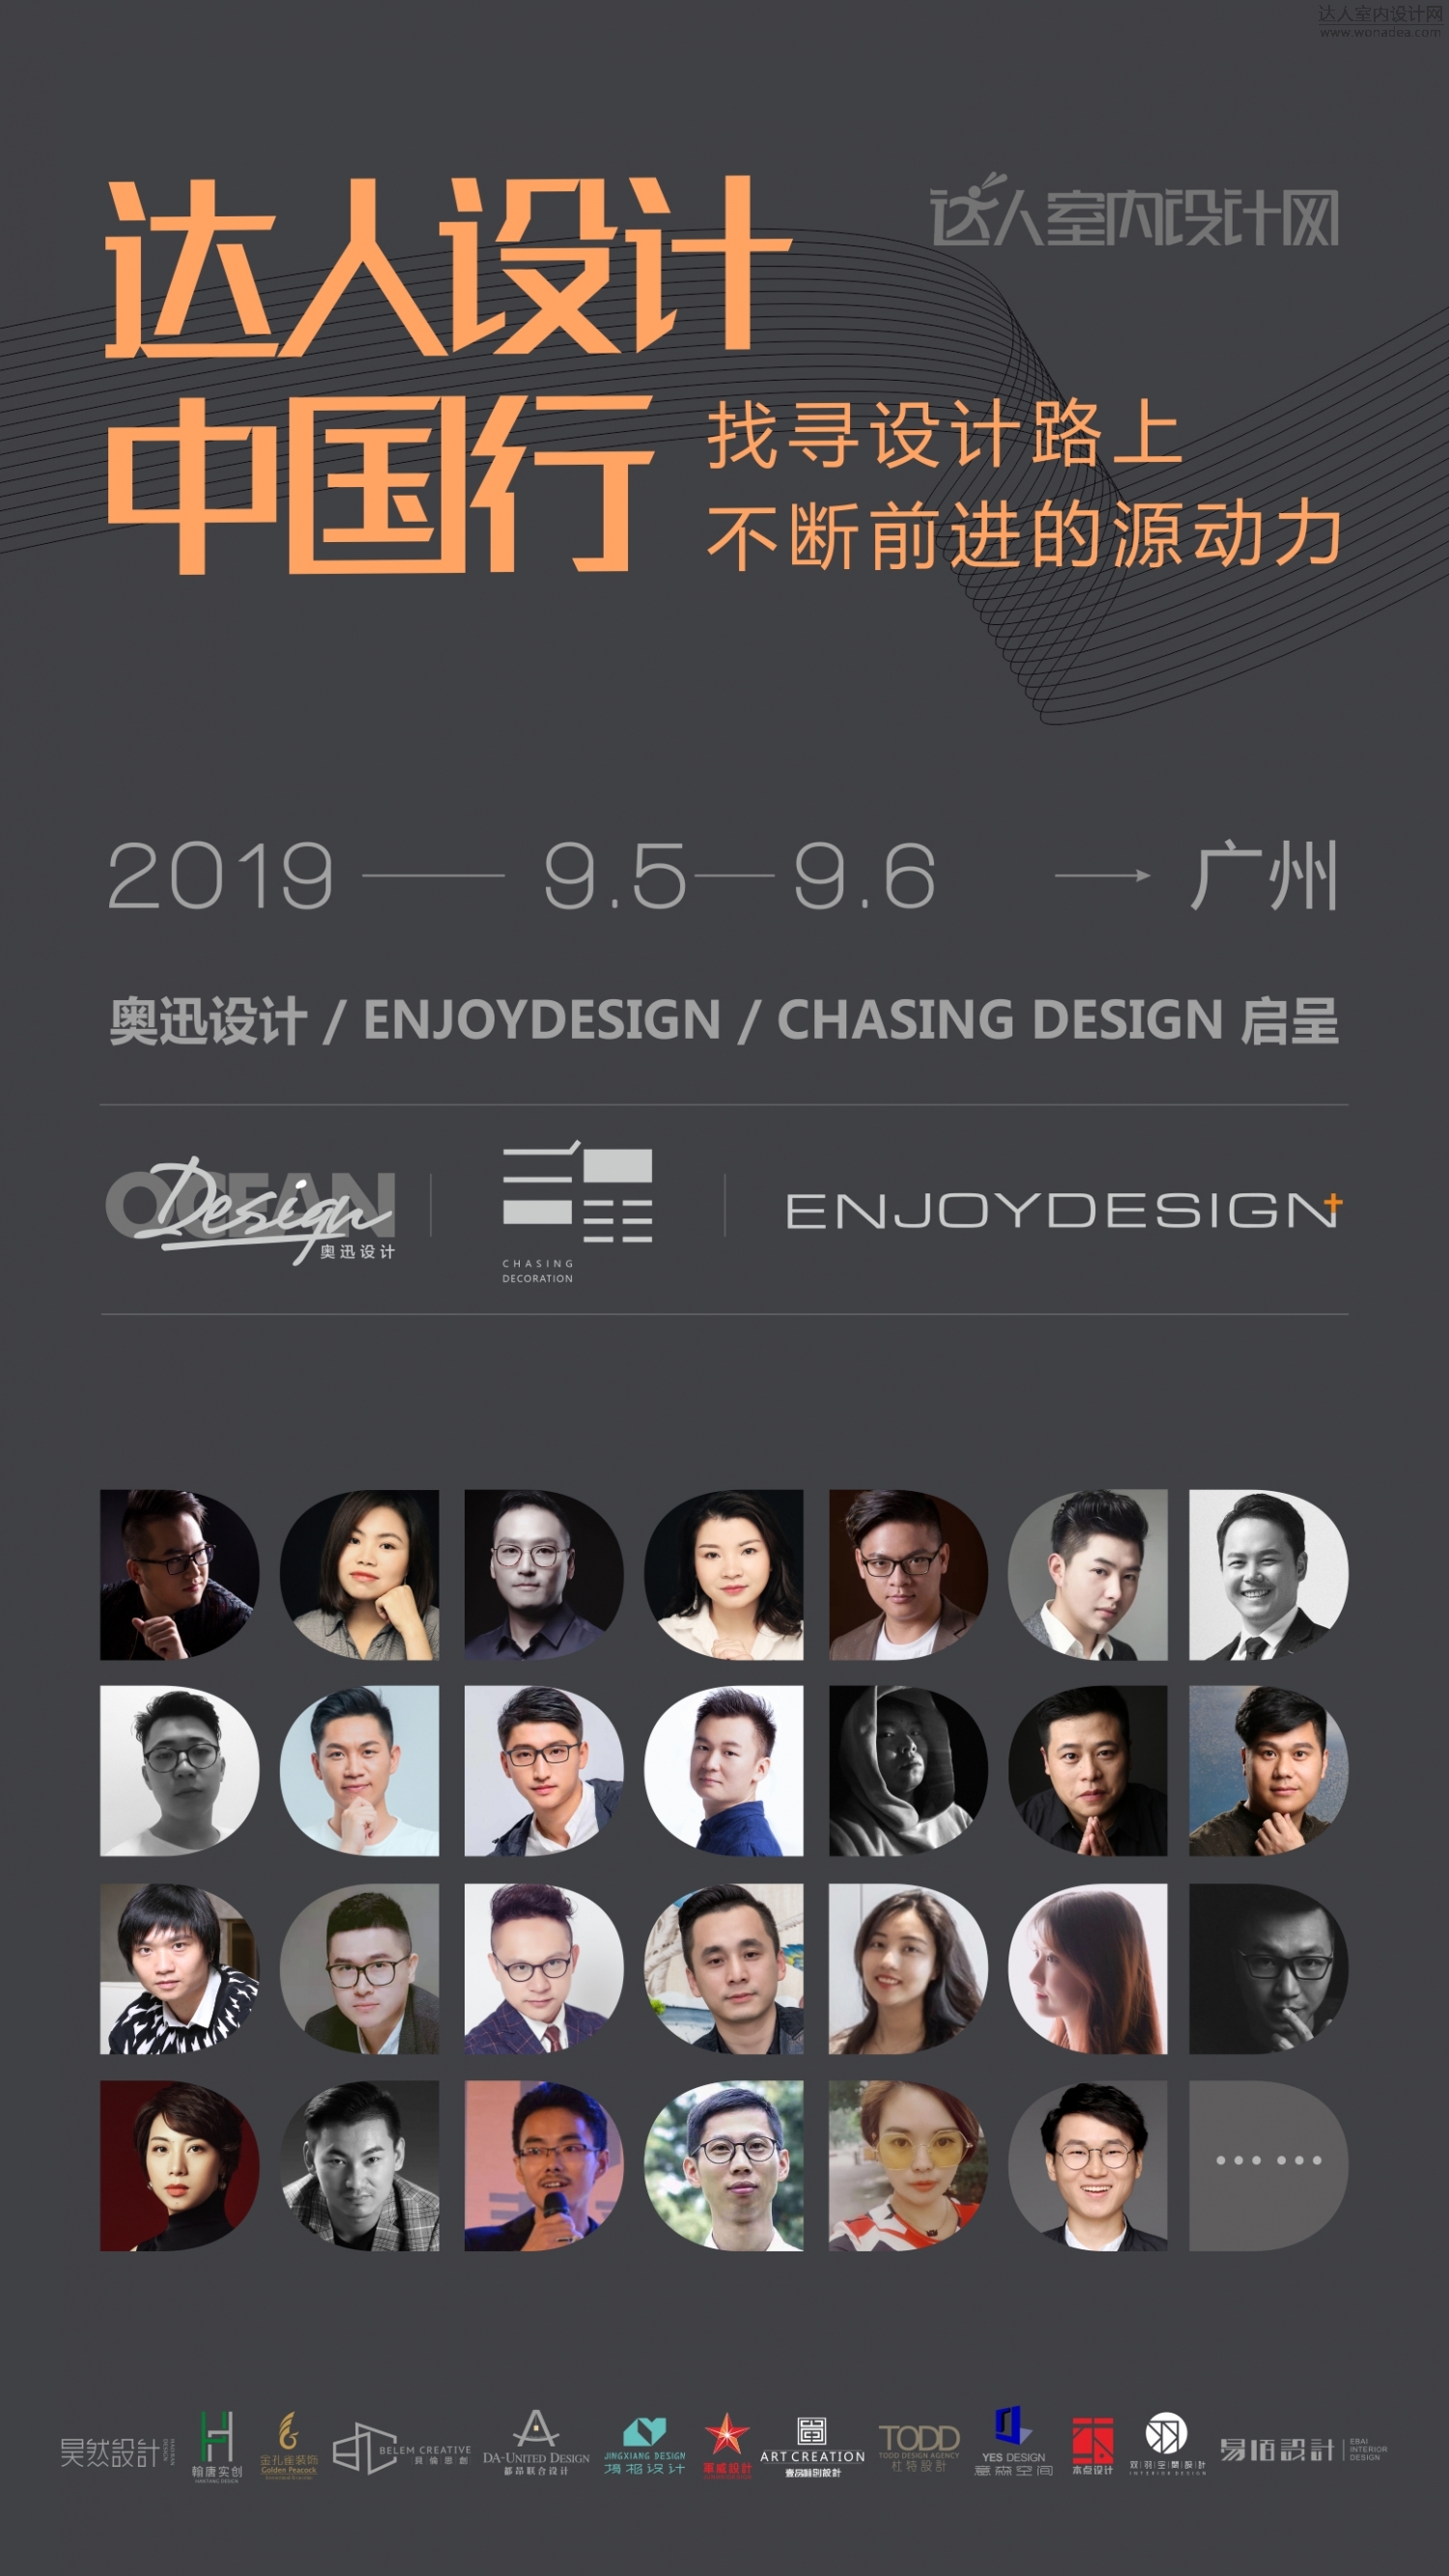 达人设计中国行2019年9月5-6日.jpg